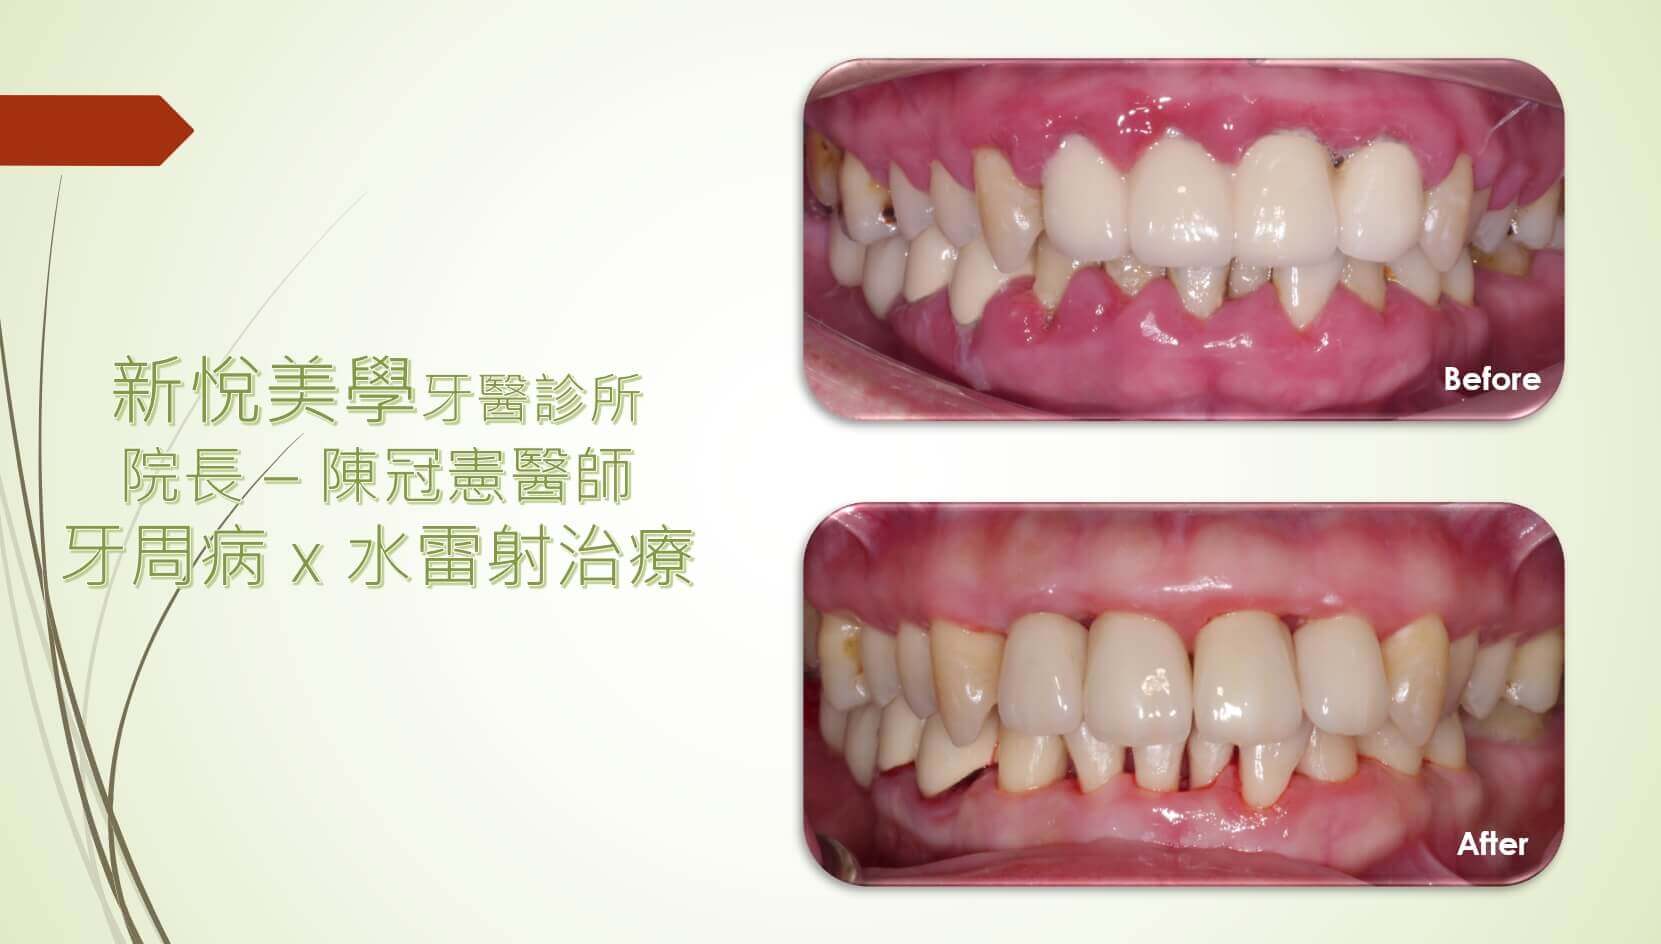 新悅美學牙醫診所的案例分享圖片